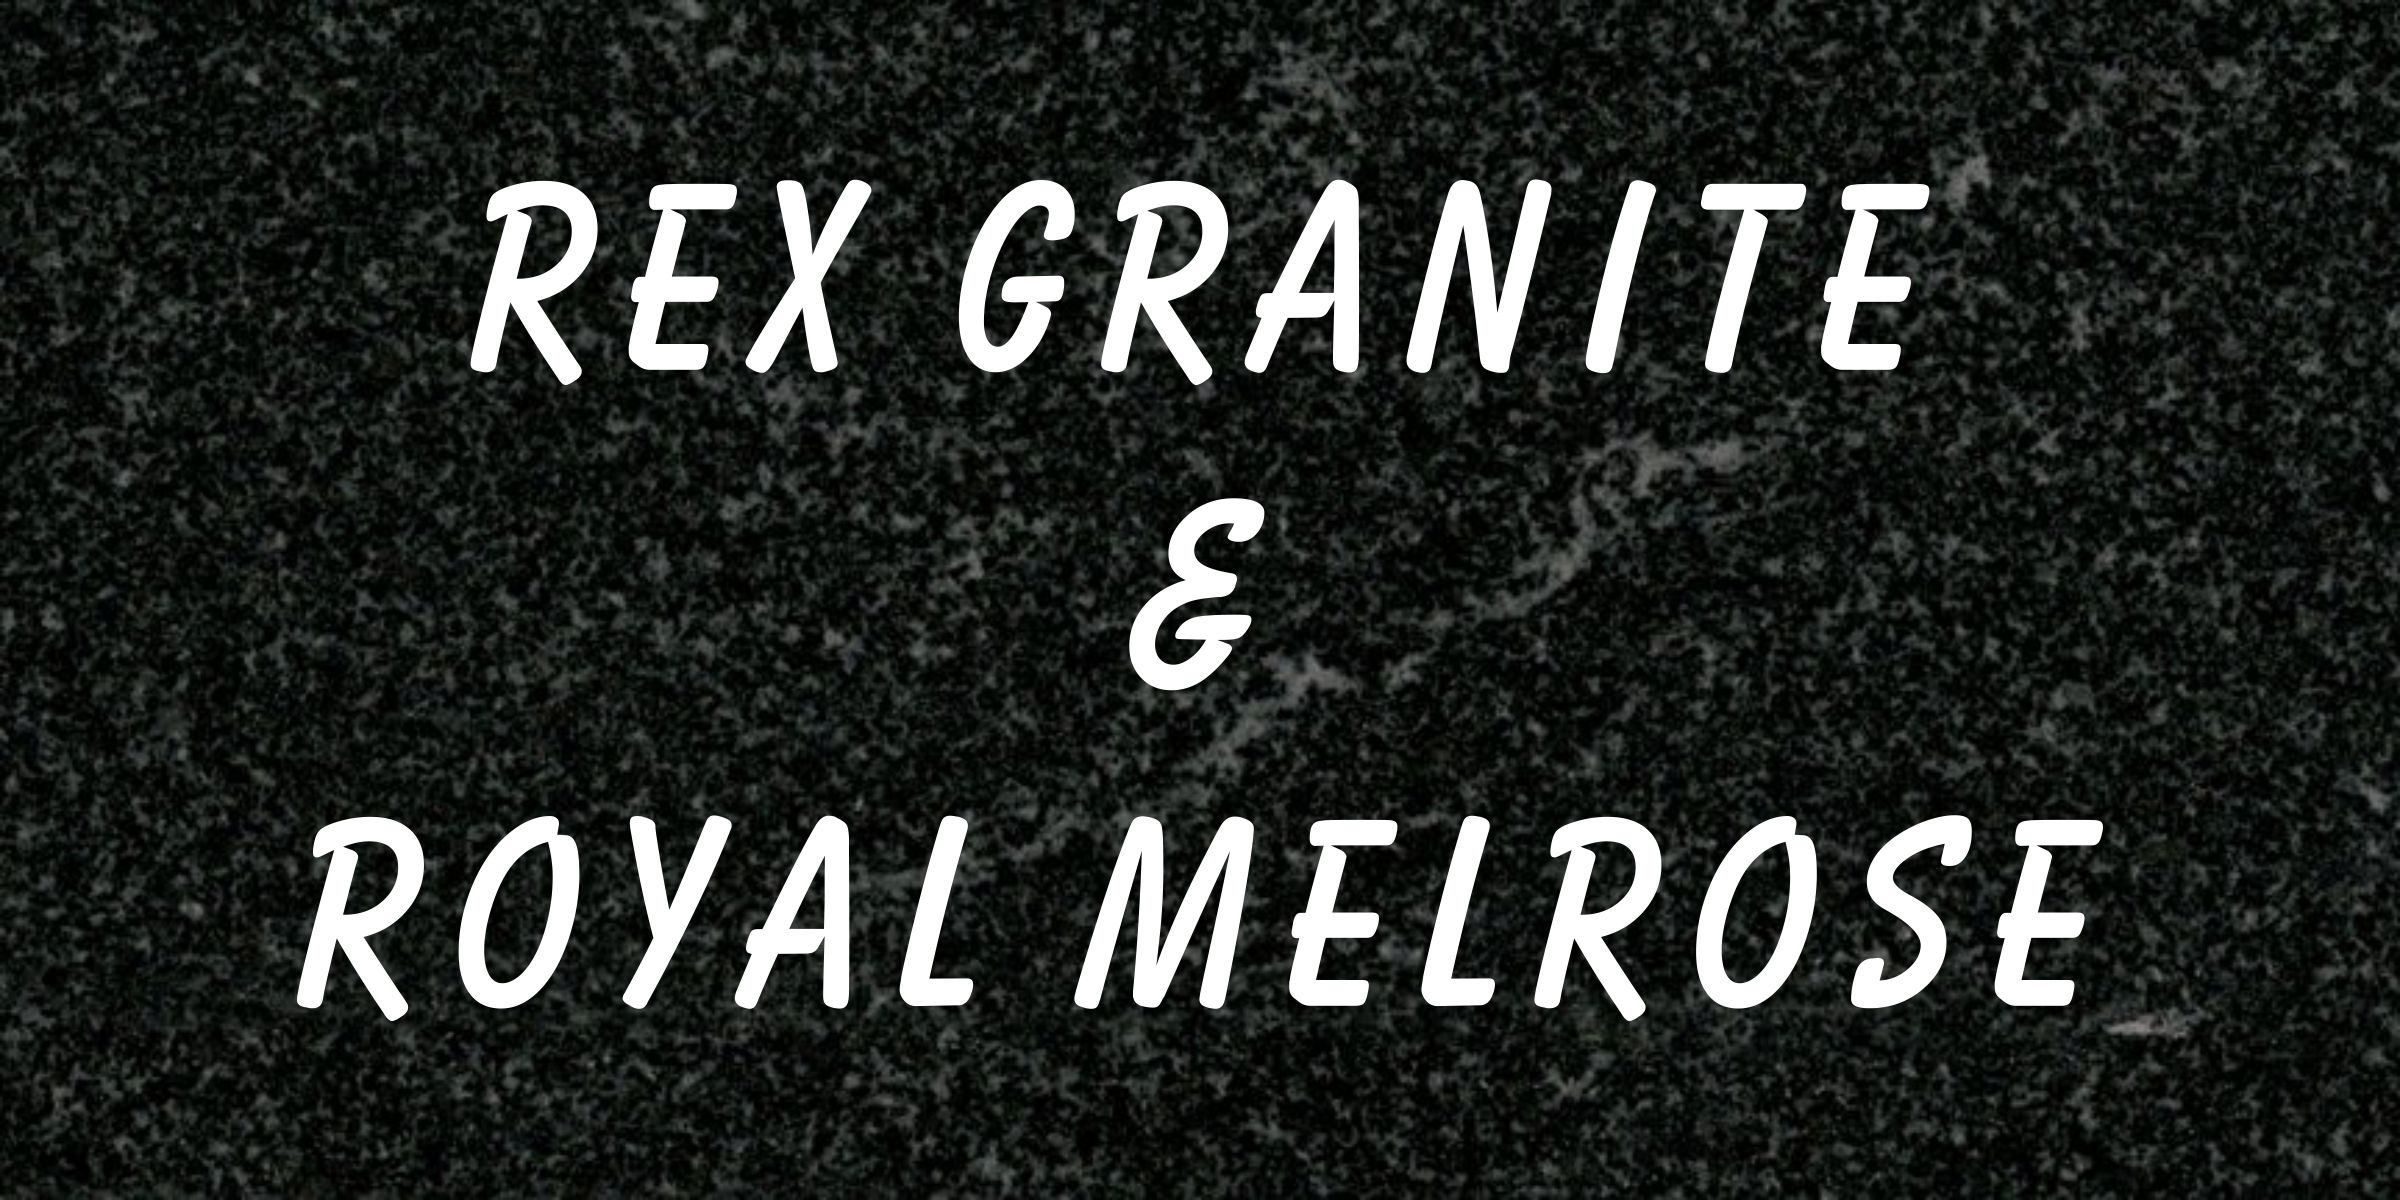 Rex and Royal Melrose